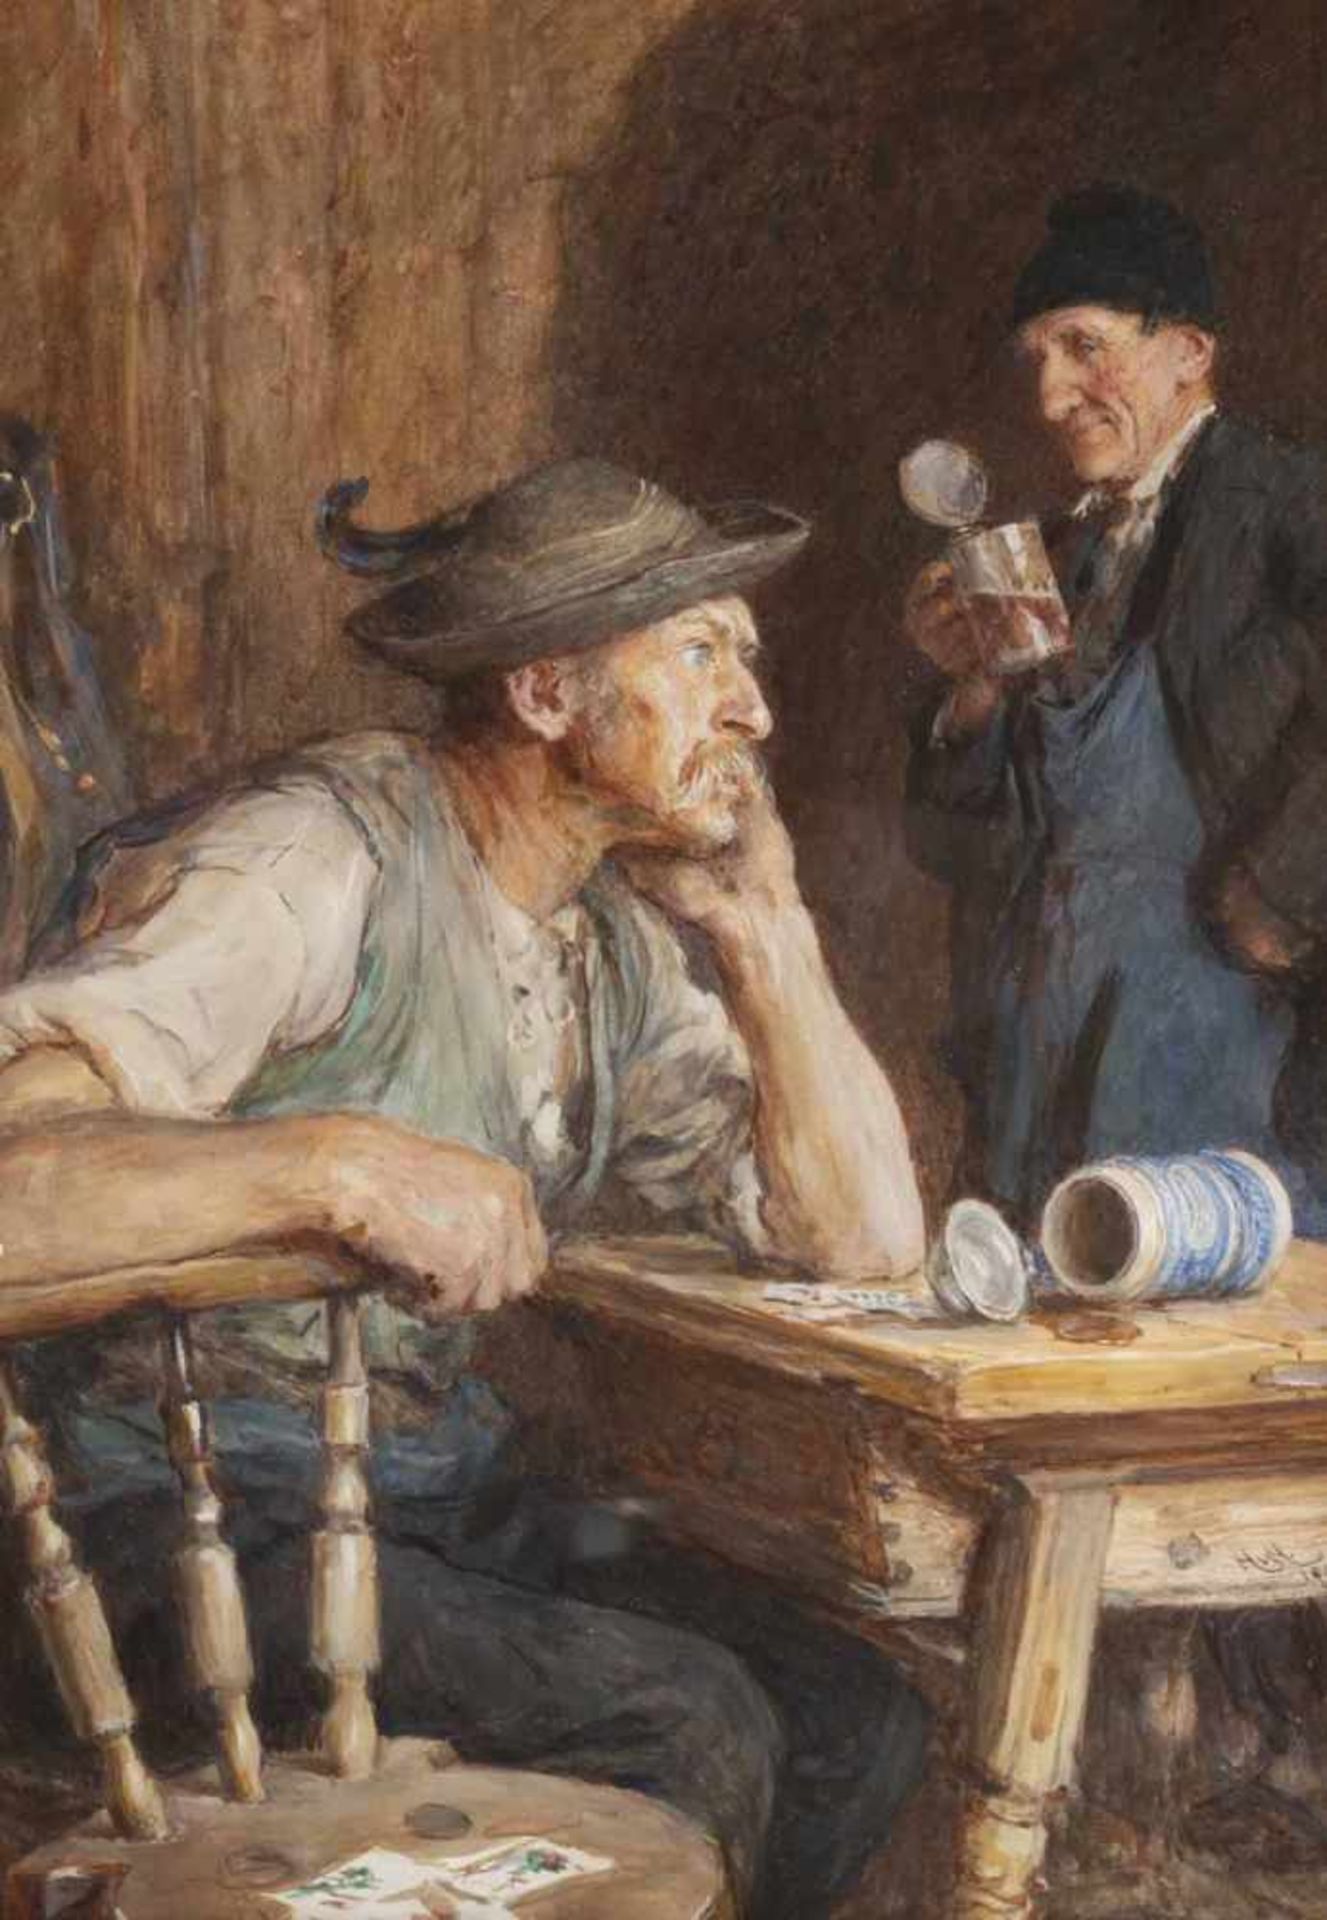 Herkomer, Hubert vonWaal (Buchloe) 1849 - Budleigh Salterton 191438,5 x 28,5 cm"The Awakening